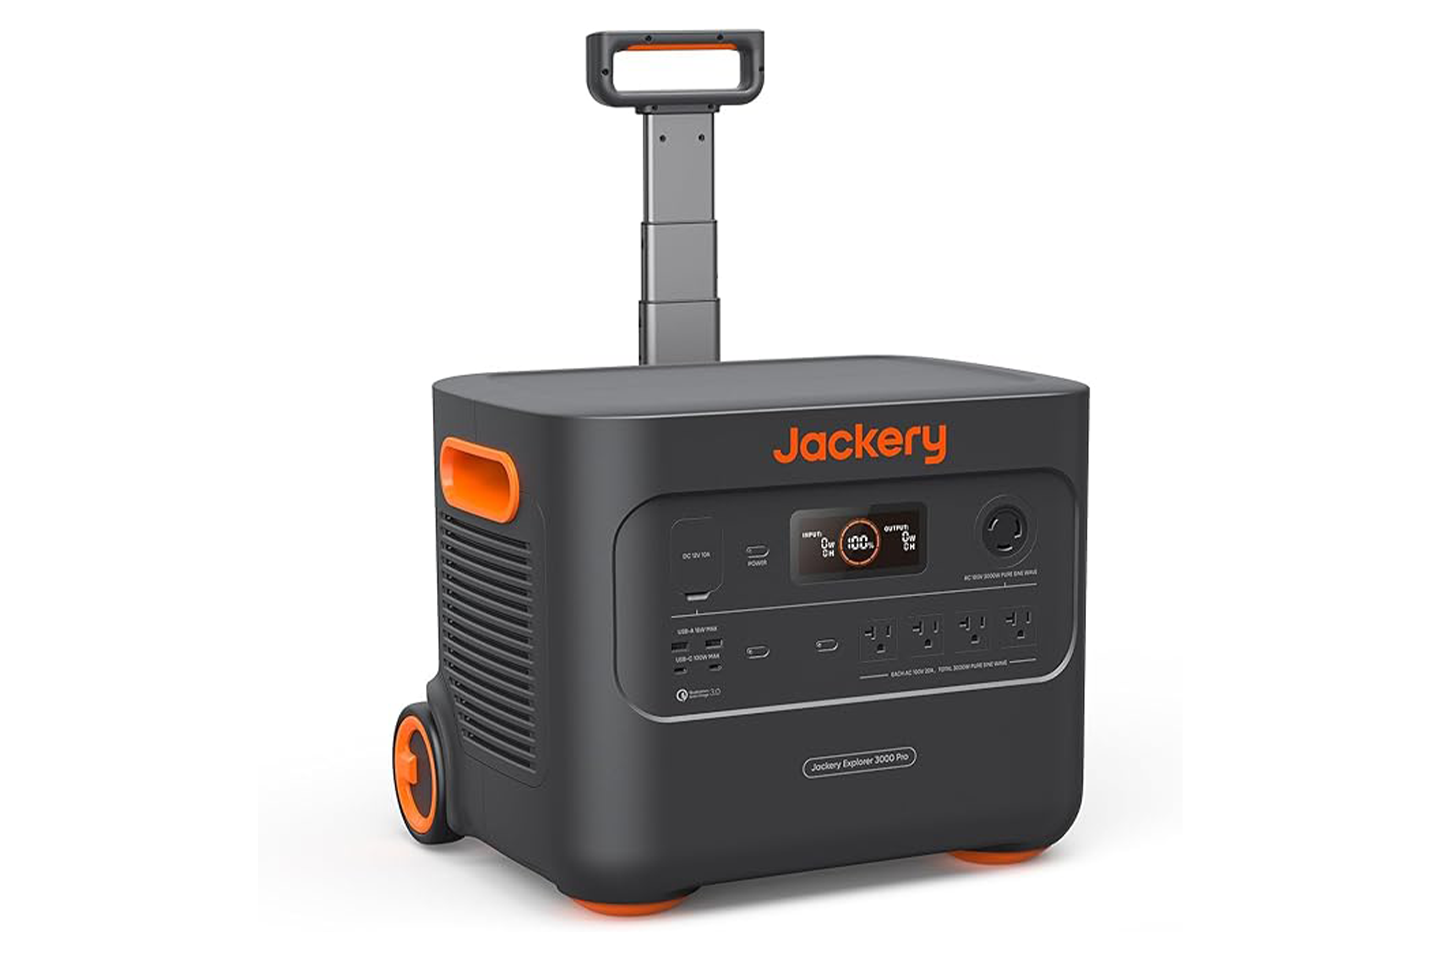 ポータブル電源(Jackery3000 Pro)